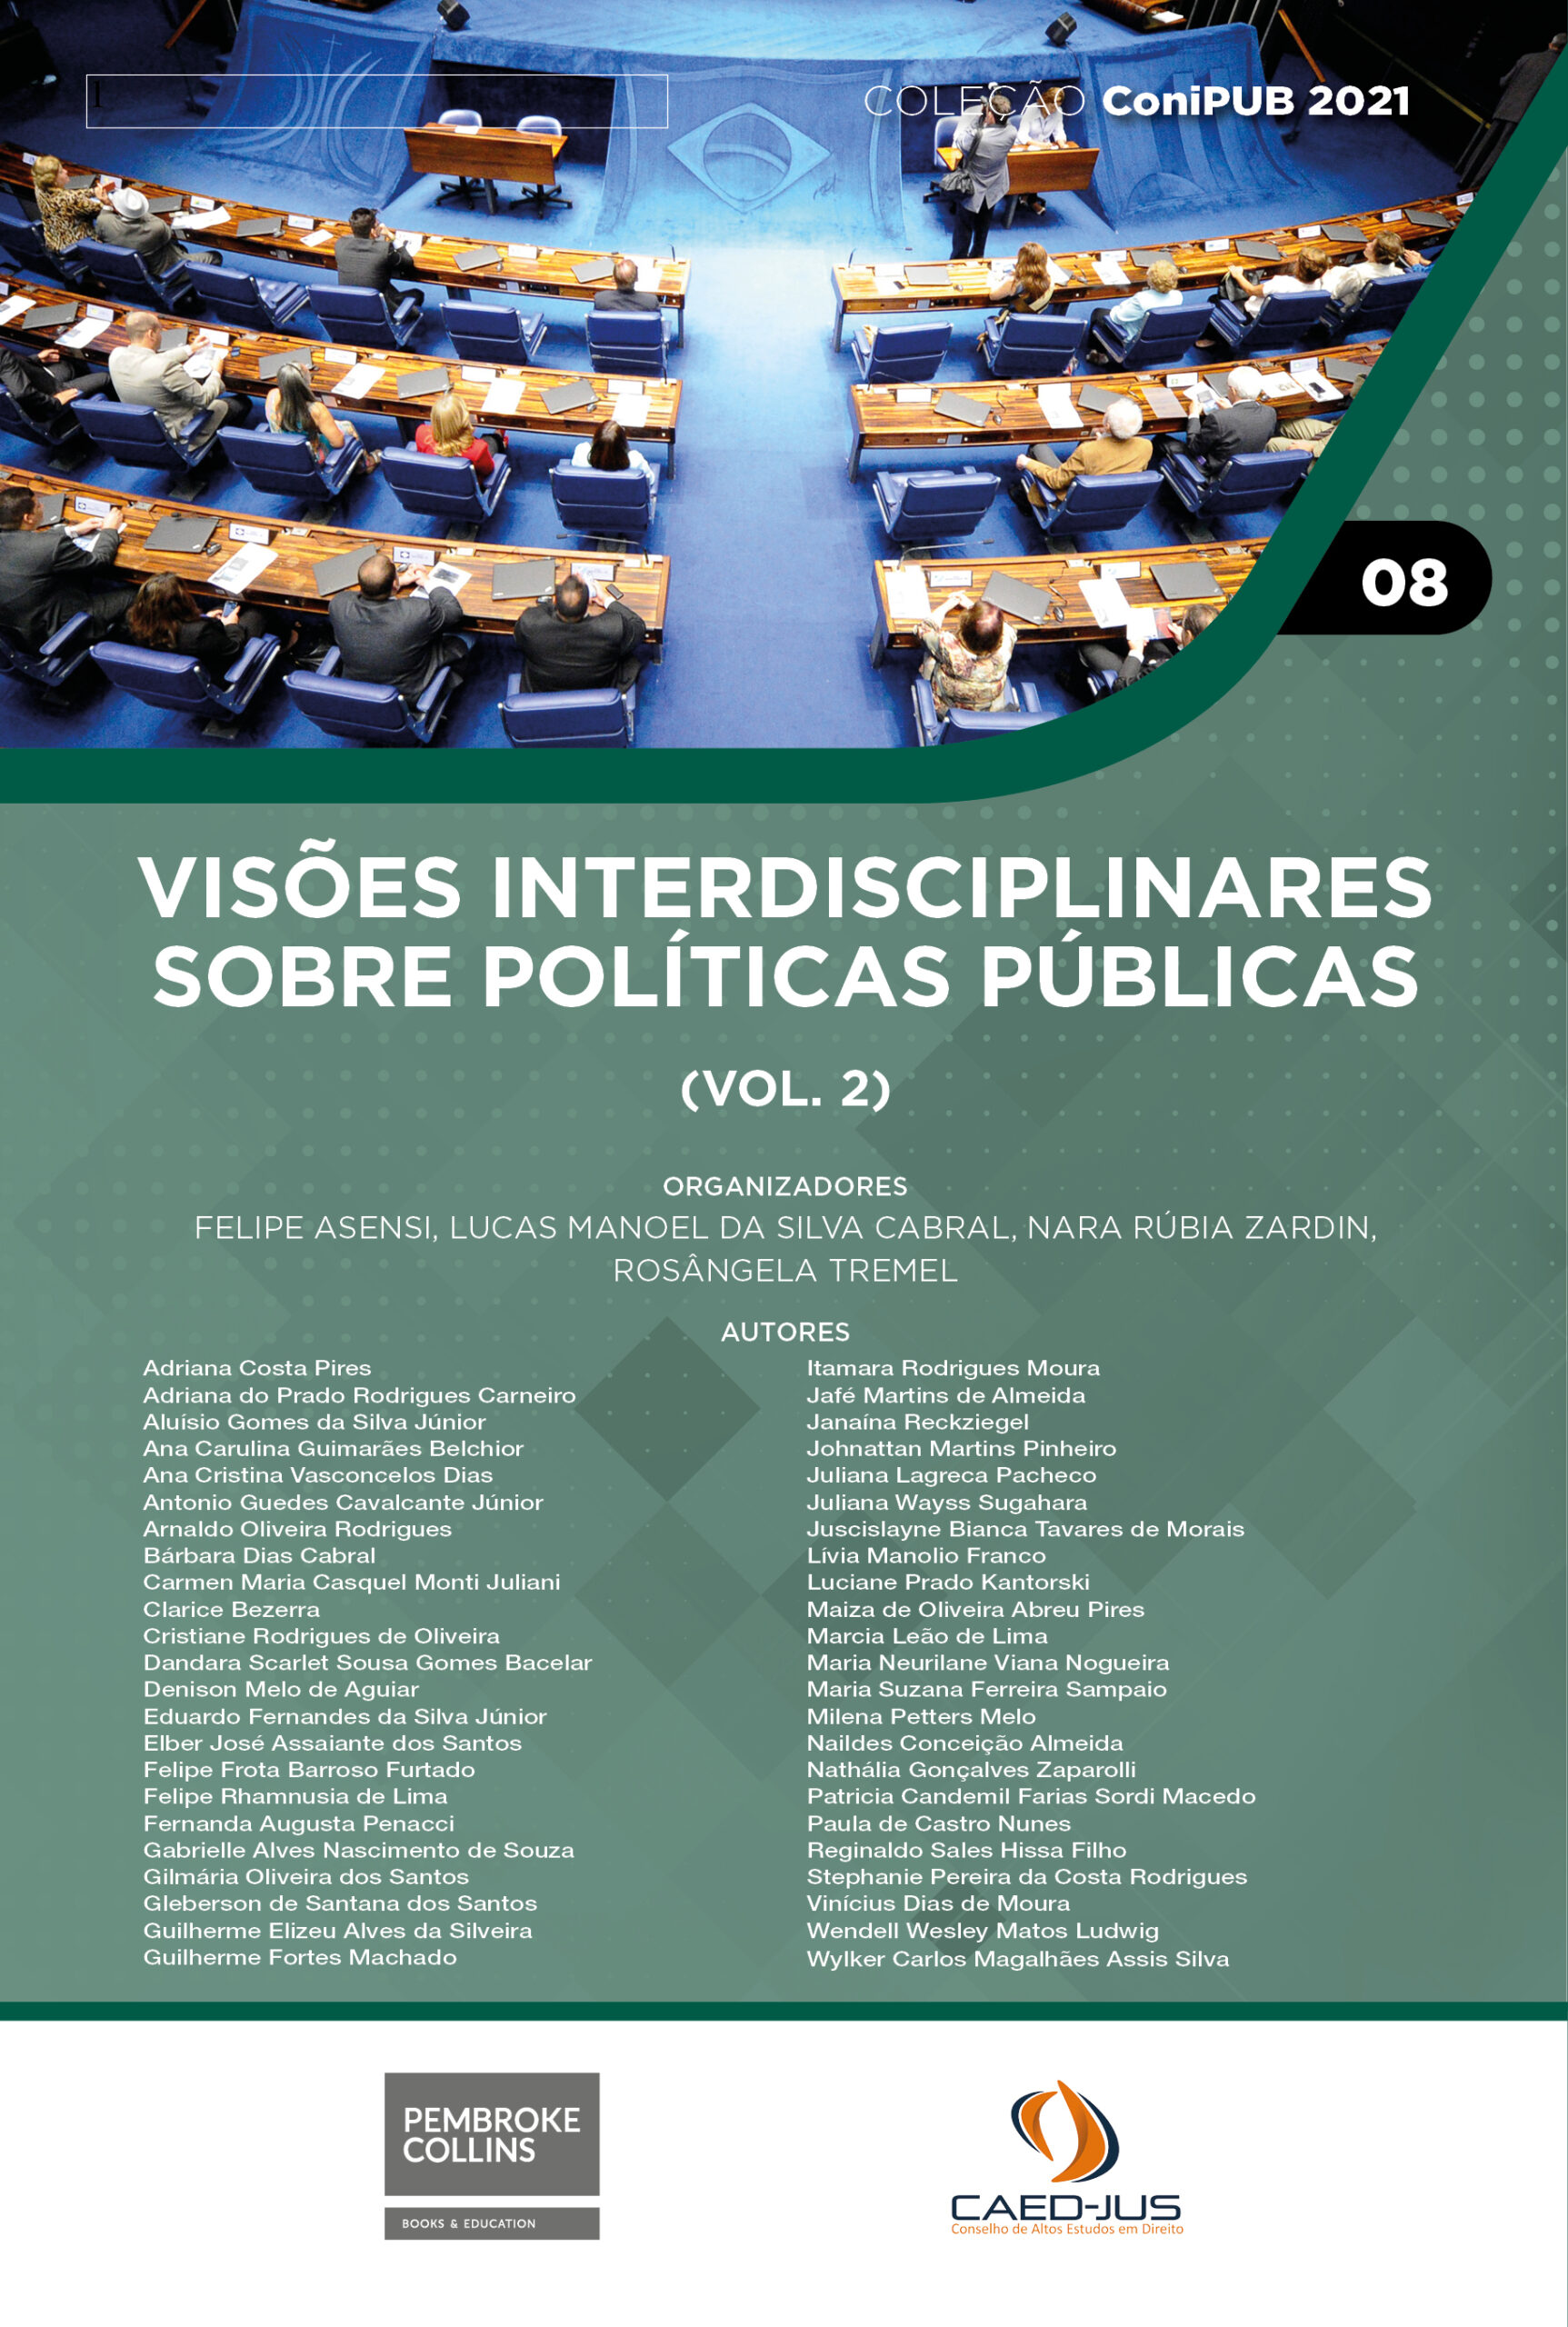 CONIPUB-2021-08-capa-Visoes-interdisciplinares-sobre-politicas-publicas-vol-2-Pembroke-Collins